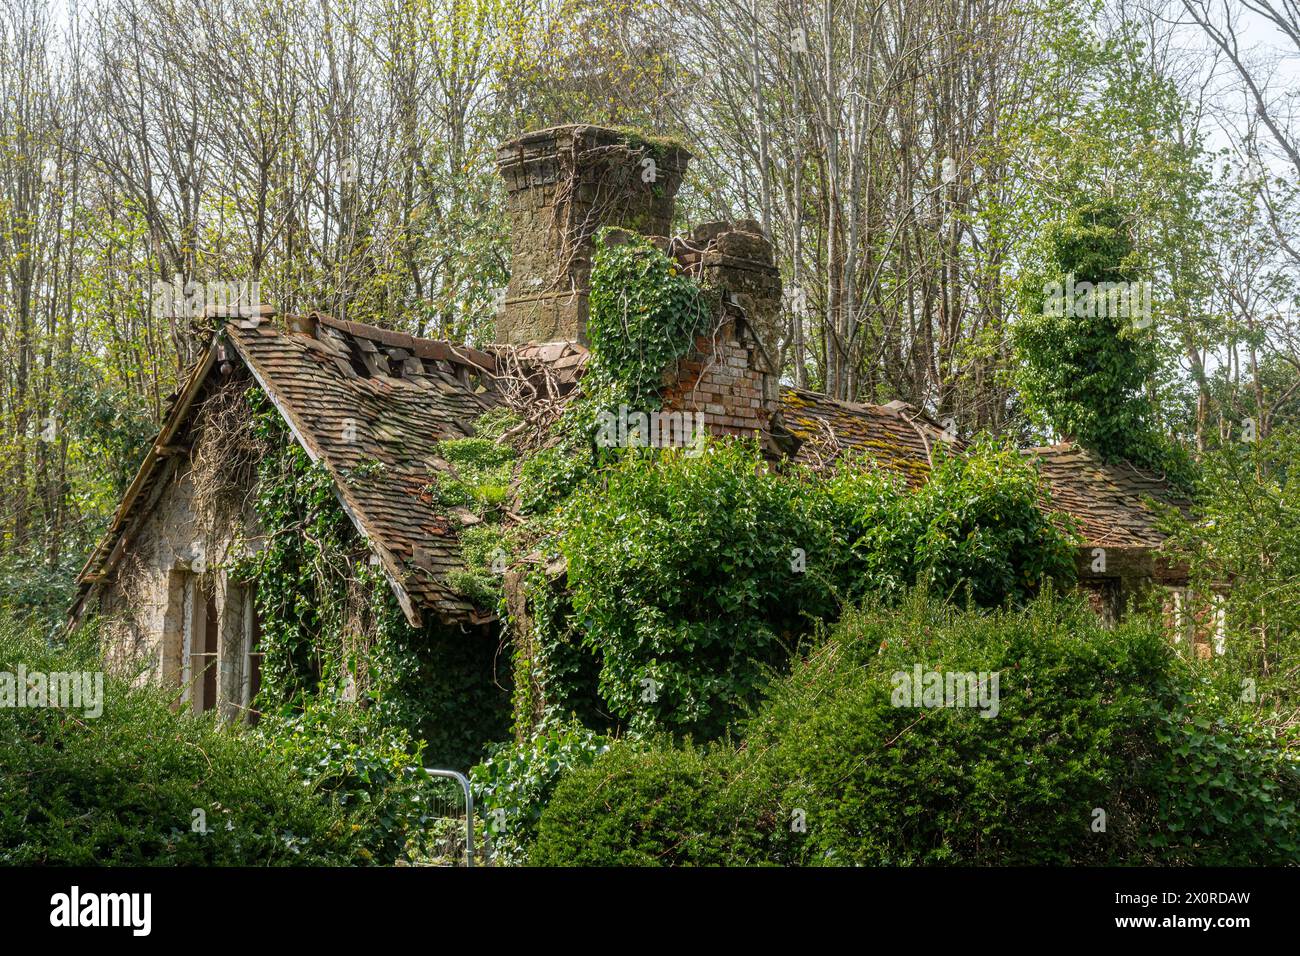 Ancienne maison de campagne abandonnée envahie par la végétation, Royaume-Uni, maison vide abandonnée étant récupérée par la nature Banque D'Images